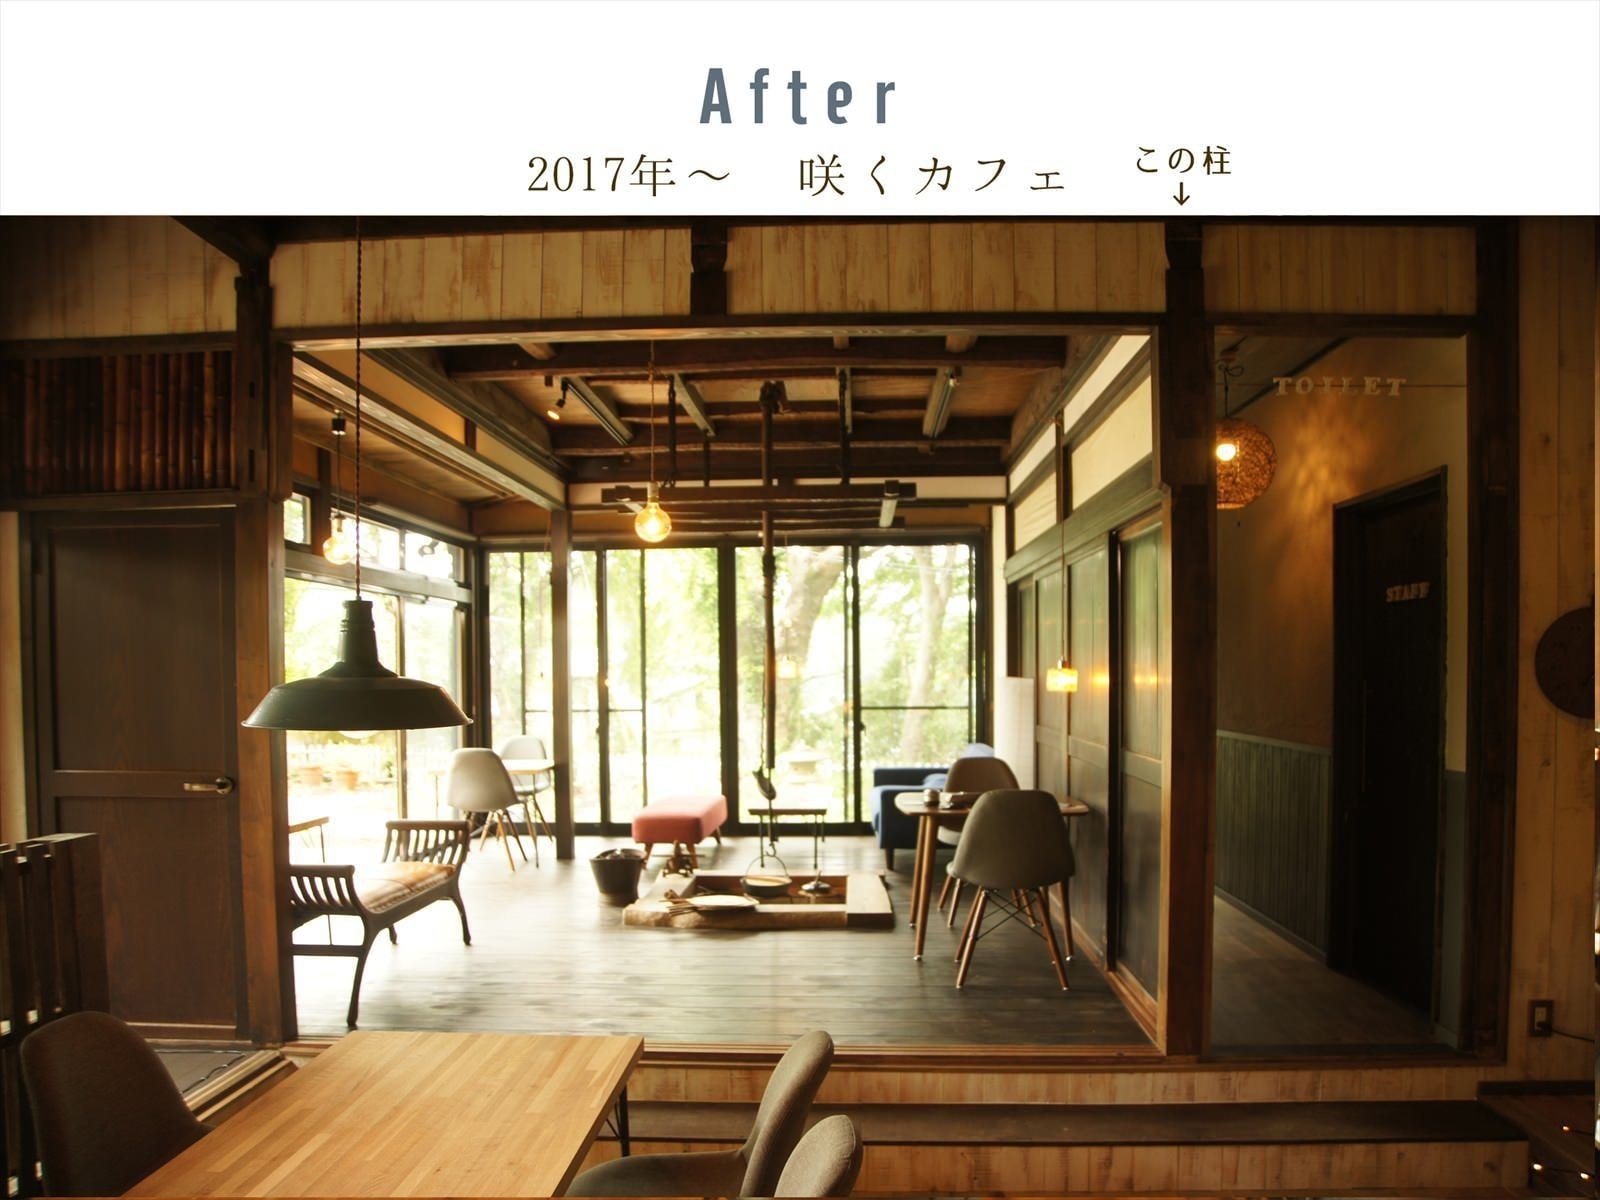 咲くカフェ。茨城・県北、奥久慈大子のカフェ＆ゲストハウス。ランチ、ディナー、コーヒー、宿泊。ビフォーアフター写真。リビング西。